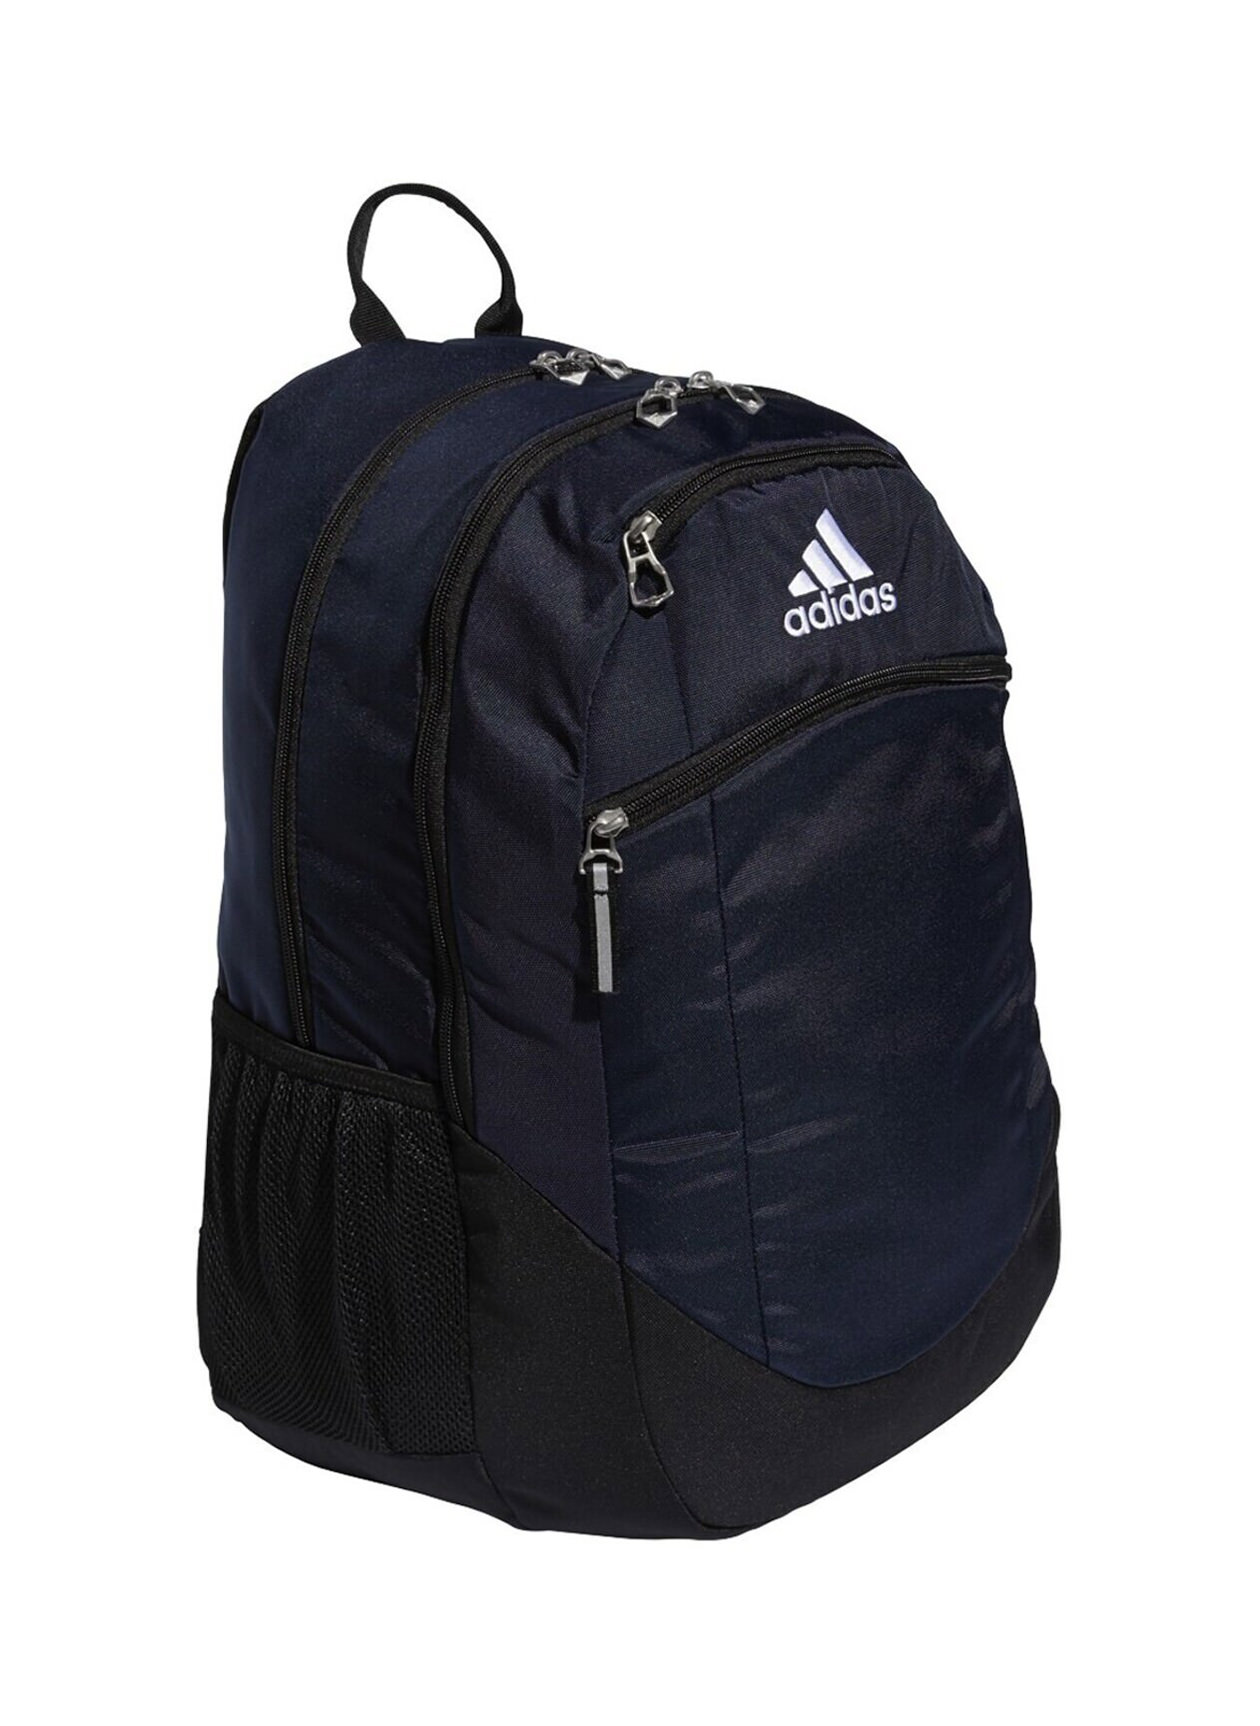 Adidas Collegiate Navy Striker II Team Backpack